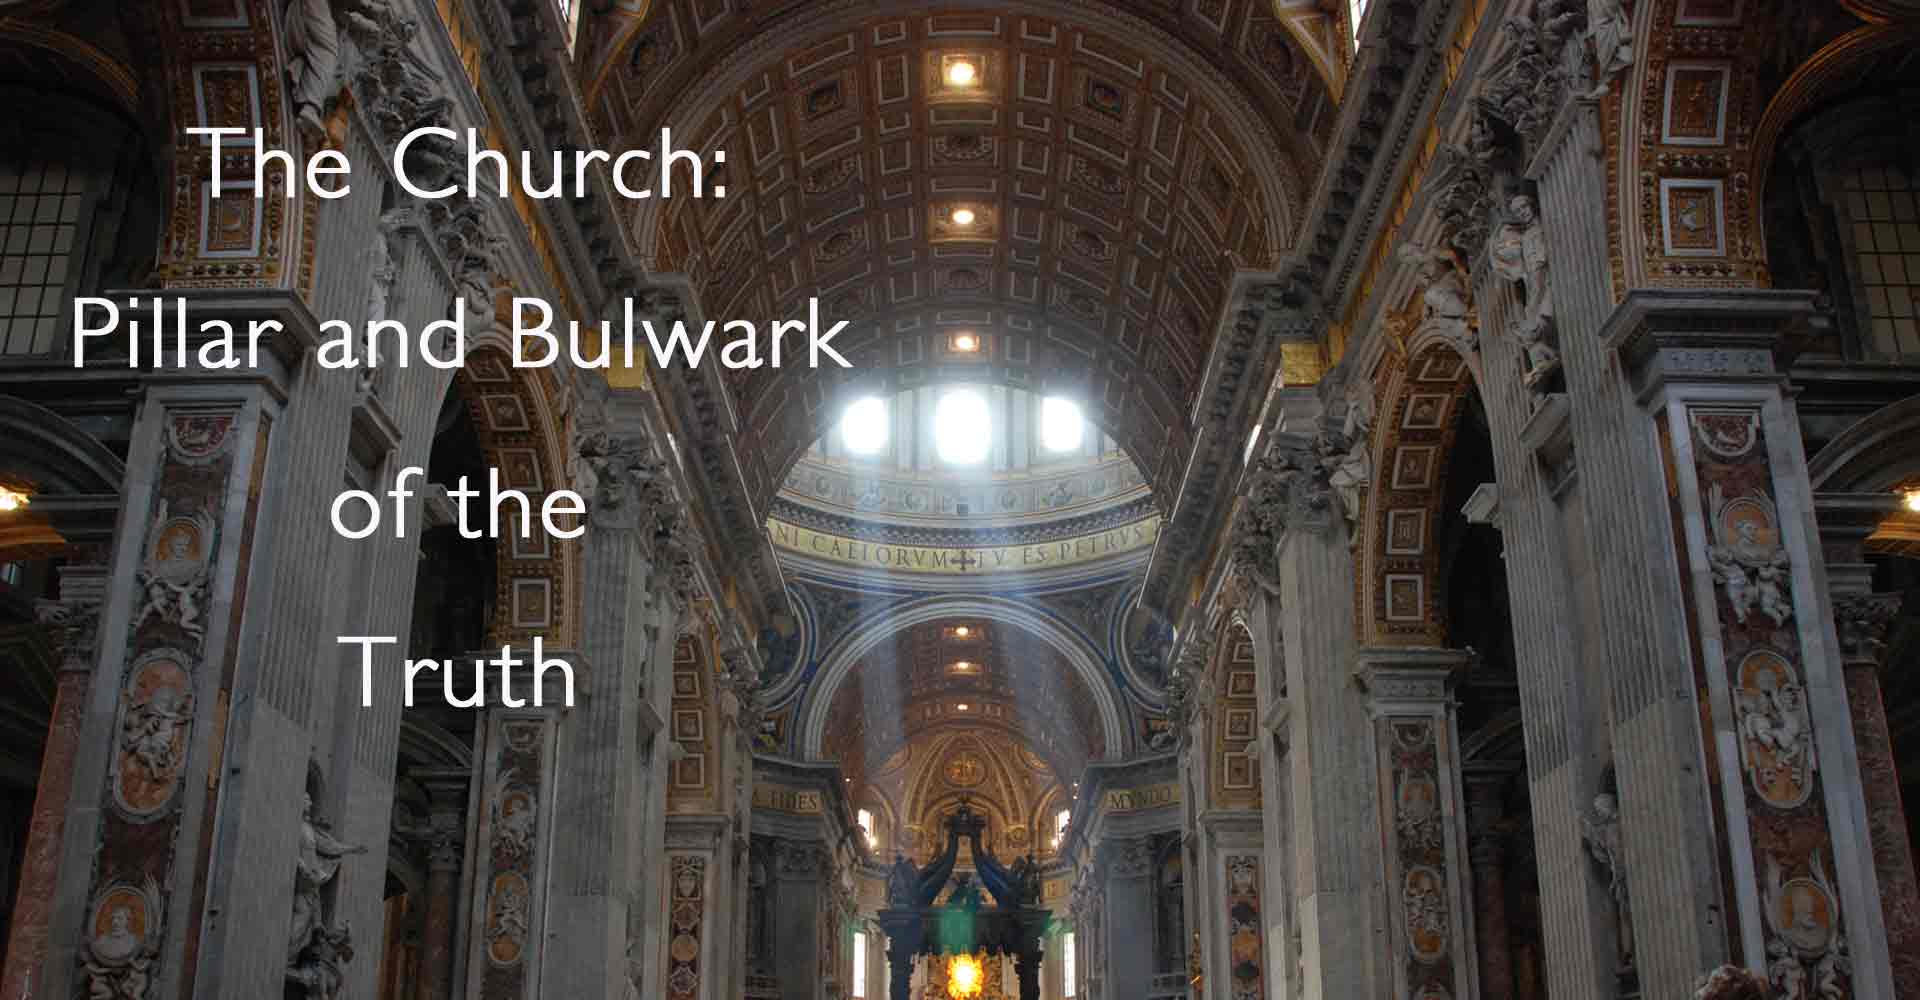 The Church is the Pillar and Bulwark of the Truth